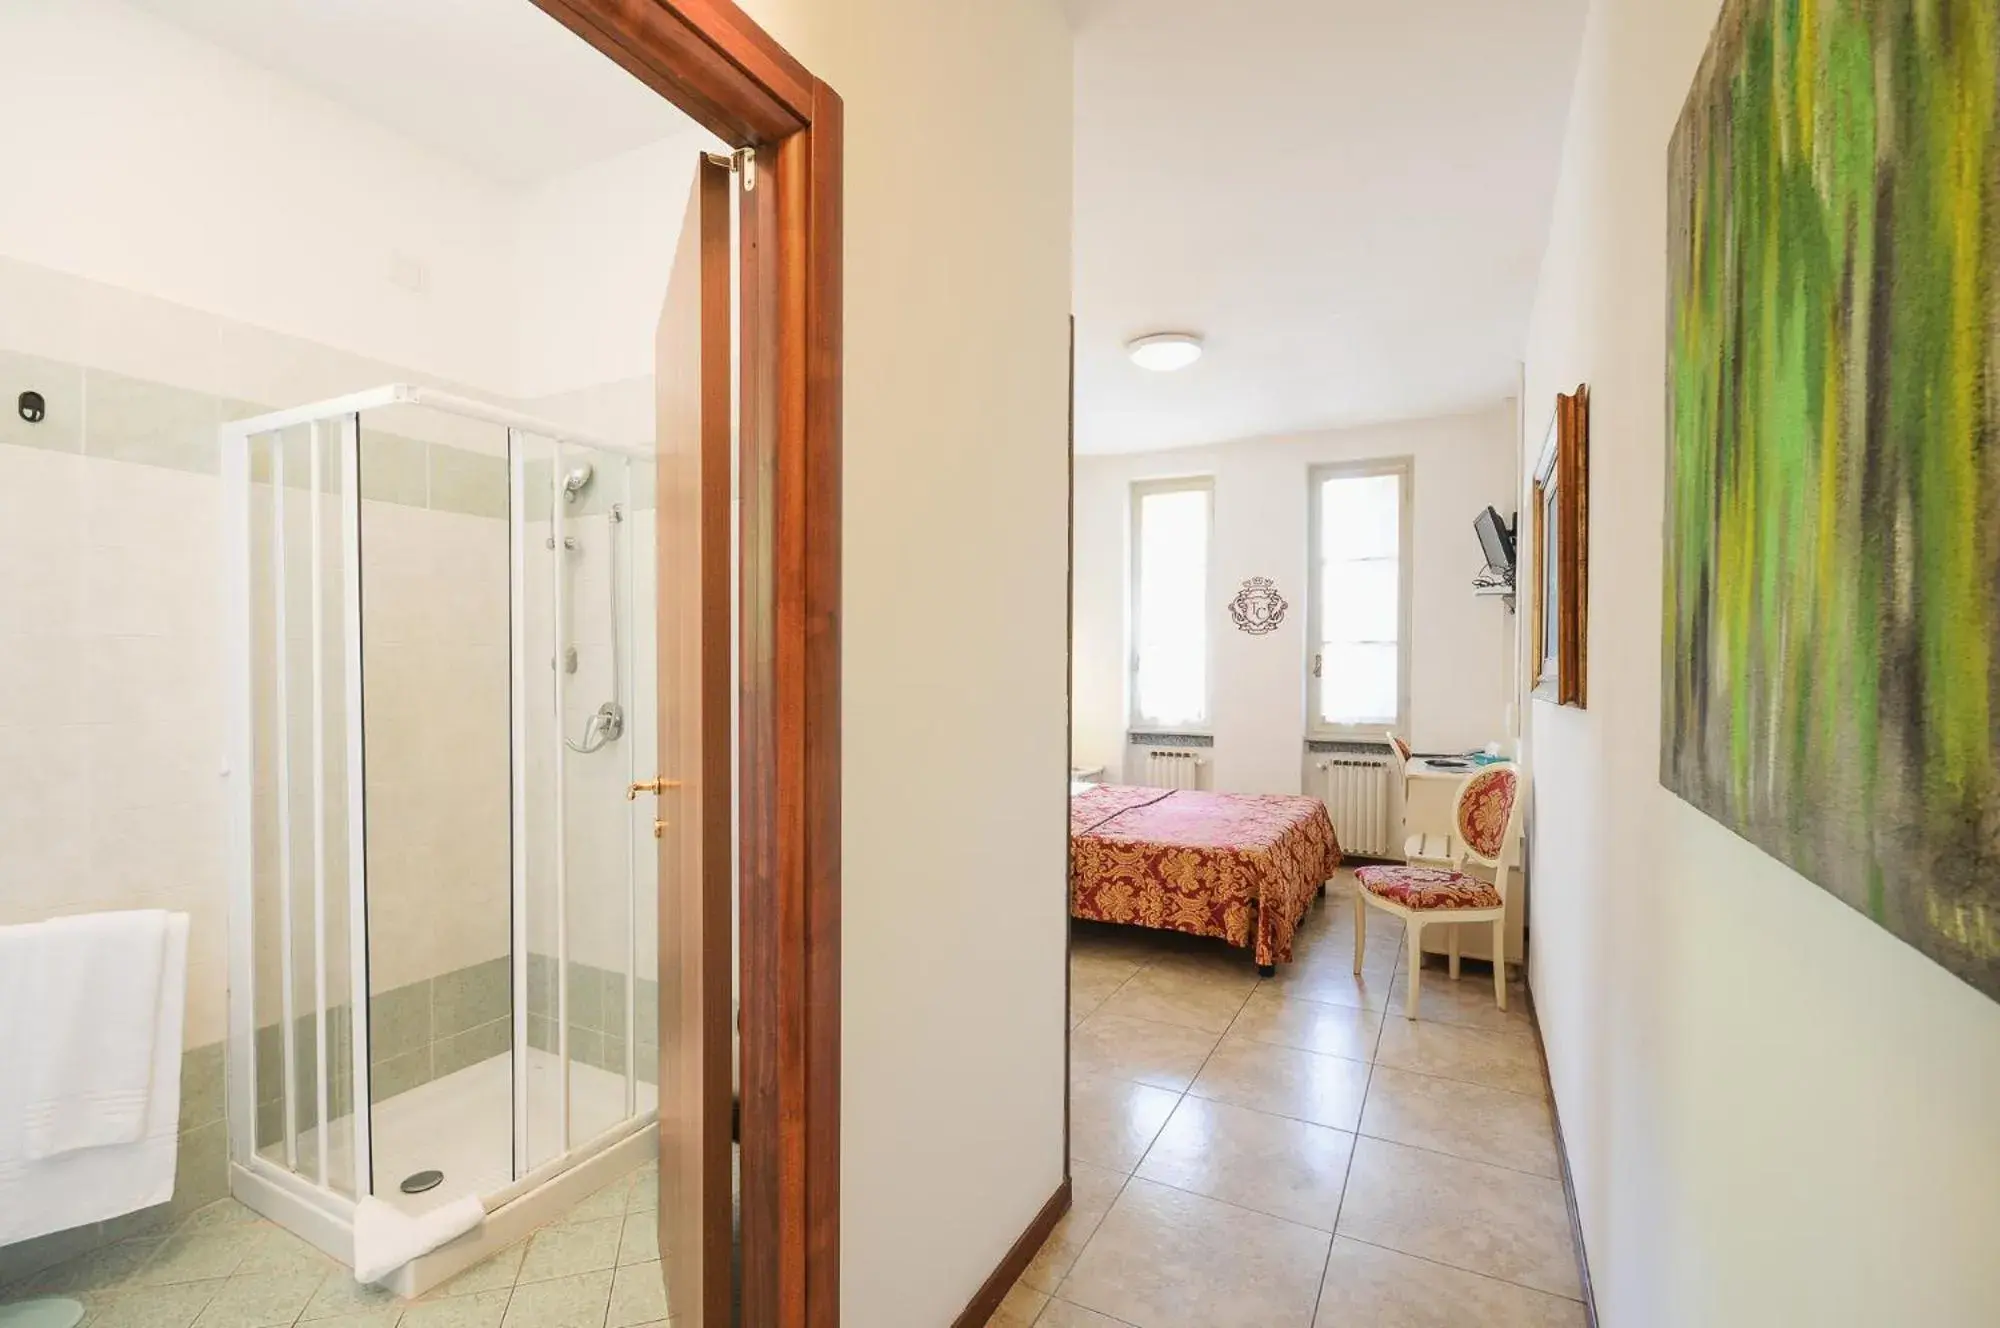 Shower in Hotel Terzo Crotto